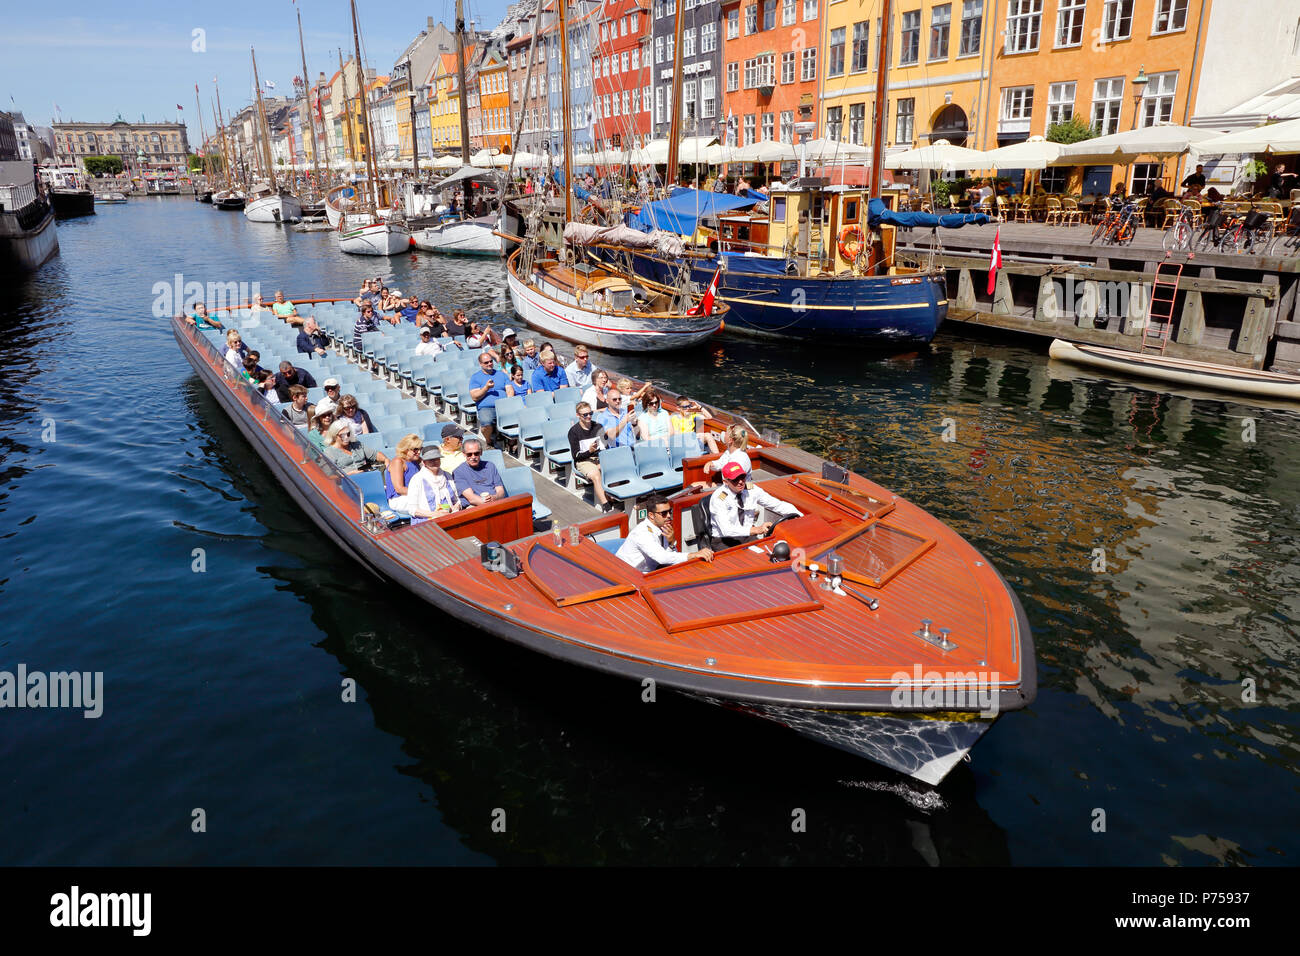 Kopenhagen, Dänemark - 27. Juni 2018: Ein Boot mit Touristen im alten Hafen von Nyhavn auf einer geführten Grachtenrundfahrt. Stockfoto